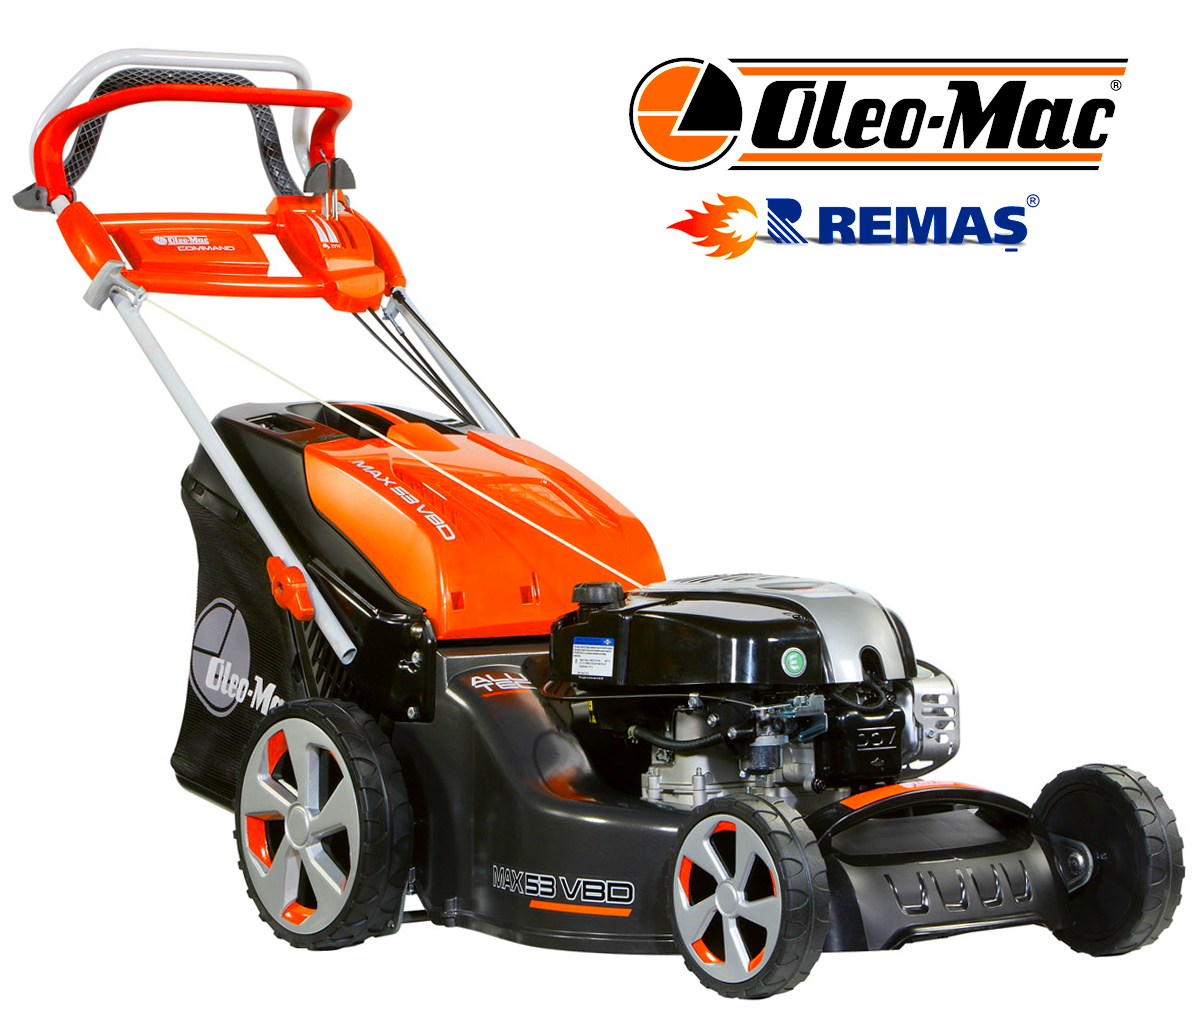 Oleo-Mac MAX 53 VBD EURO5 Alüminyum Hız Ayarlı Şanzımanlı Benzinli Çim Biçme Makinesi